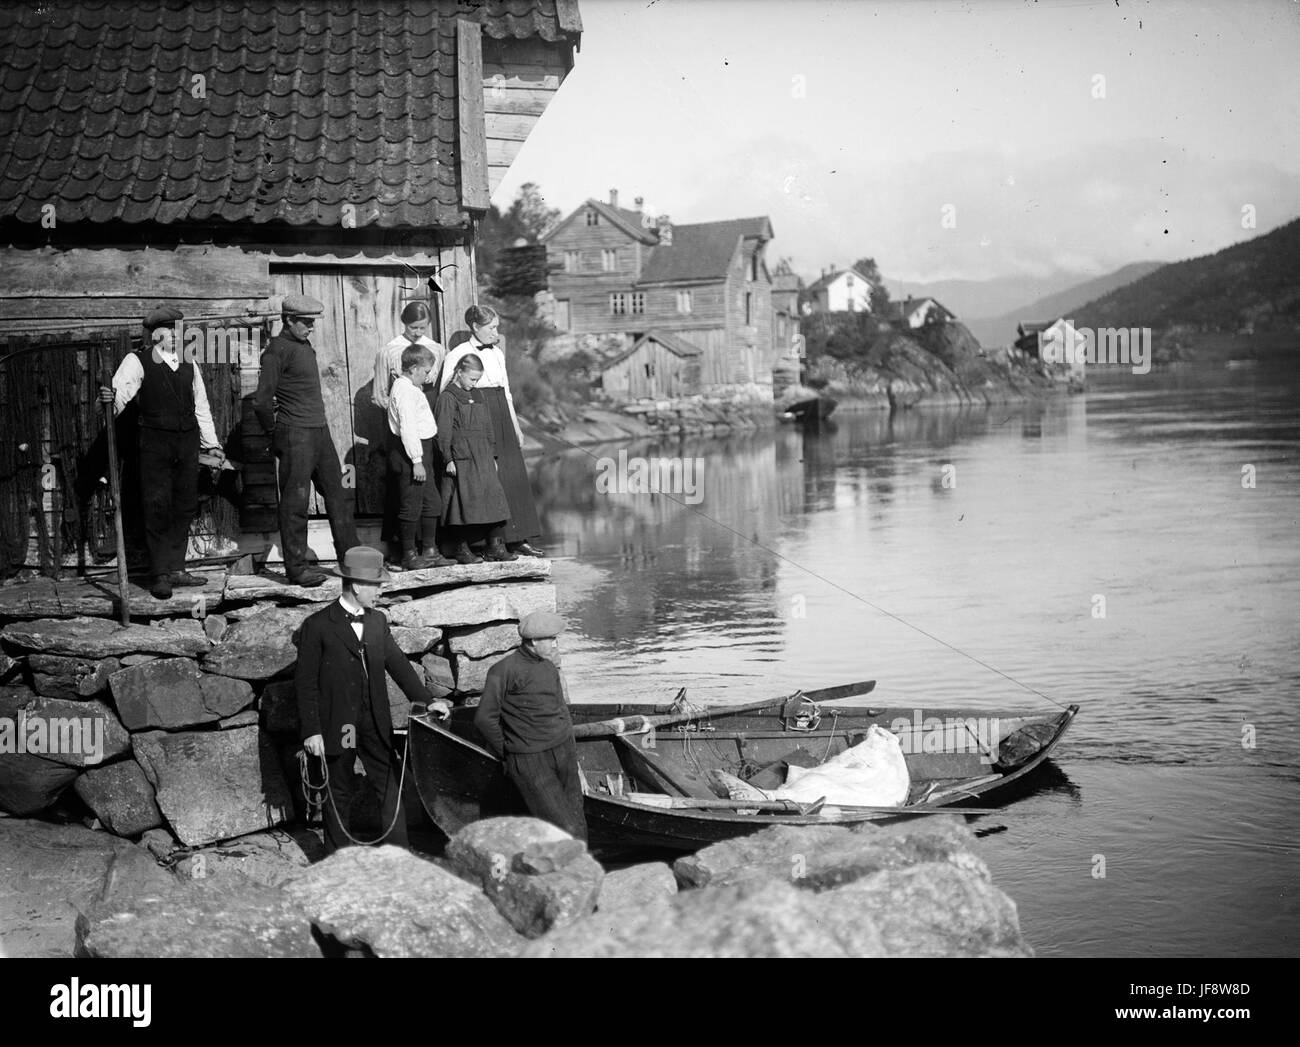 Ein seltener Fang von Heilbutt an Steinen, Førde, ca. 1917 33569721005 o Stockfoto